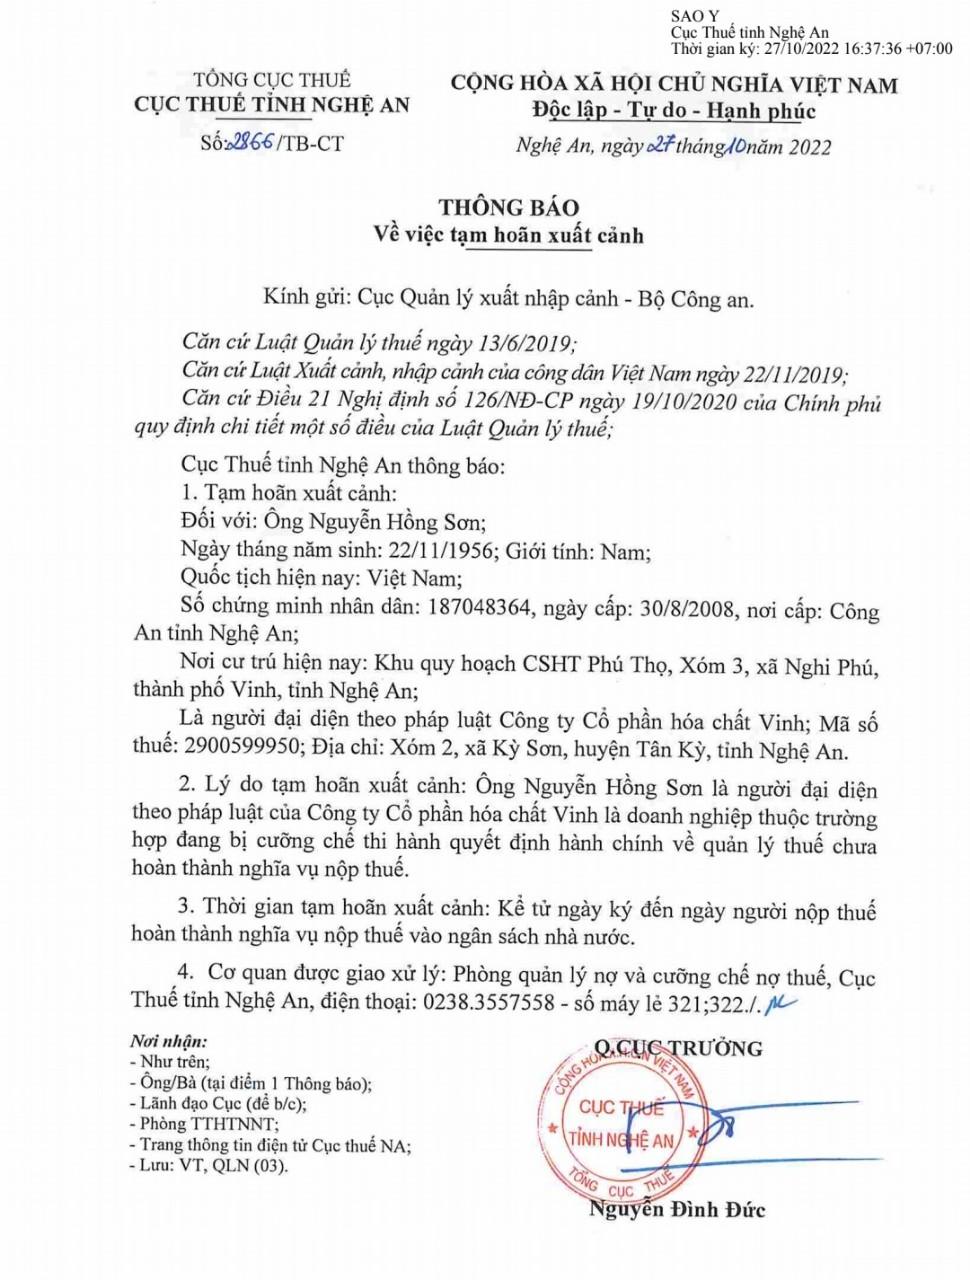 Thời gian gần đây, cơ quan Thuế tỉnh Nghệ An liên tục phát văn bản gửi Cục quản lý xuất nhập cảnh - Bộ Công an đề nghị tạm dừng xuất cảnh đối với nhiều giám đốc doanh nghiệp trên địa bàn